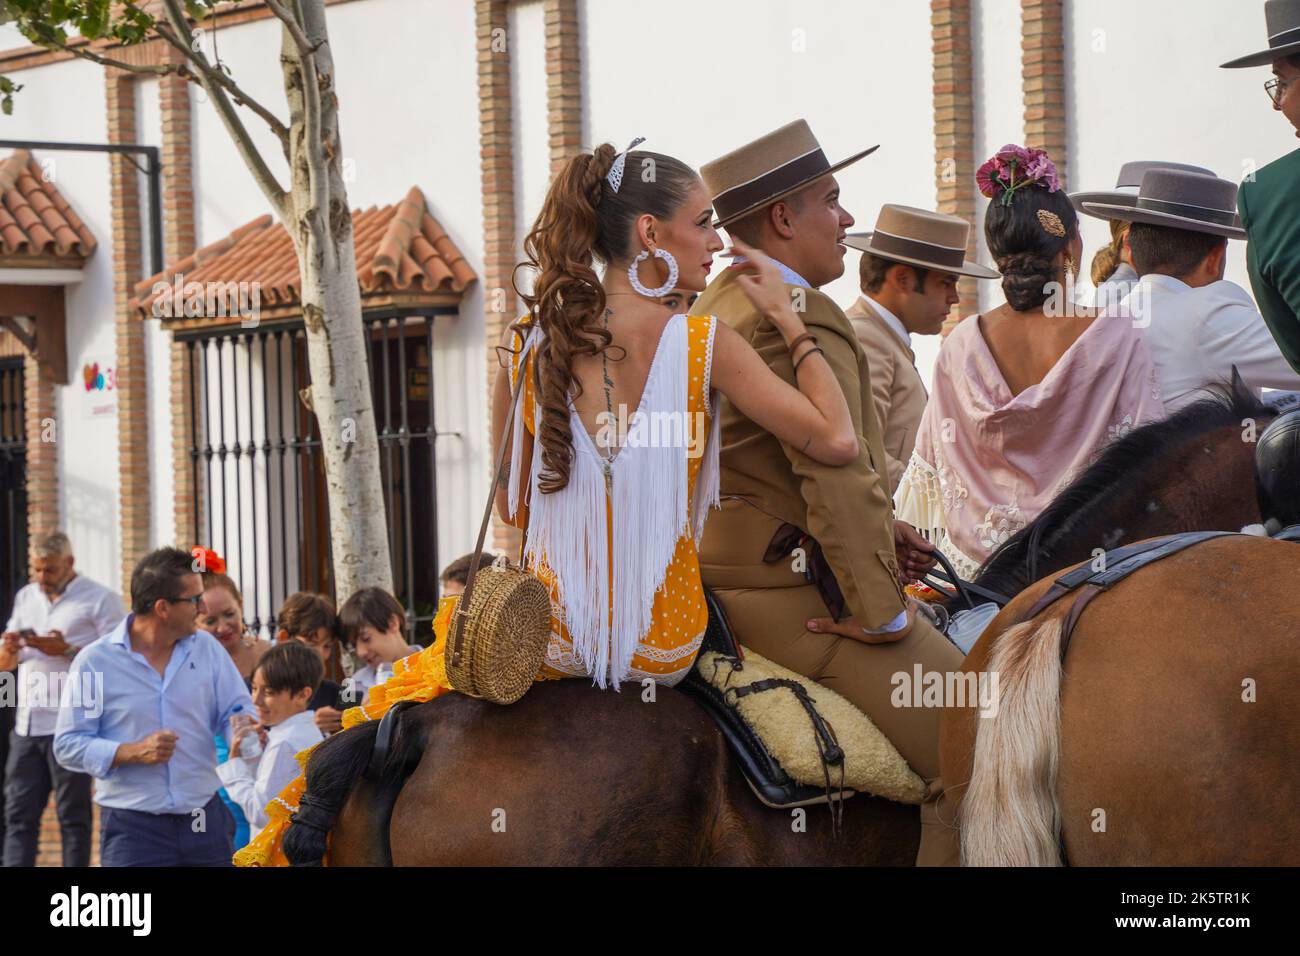 Spanischer Reiter in einer Bar, mit einer jungen Frau auf dem Rücken, während der jährlichen Messe Feria. Fuengirola, Andalusien. Stockfoto